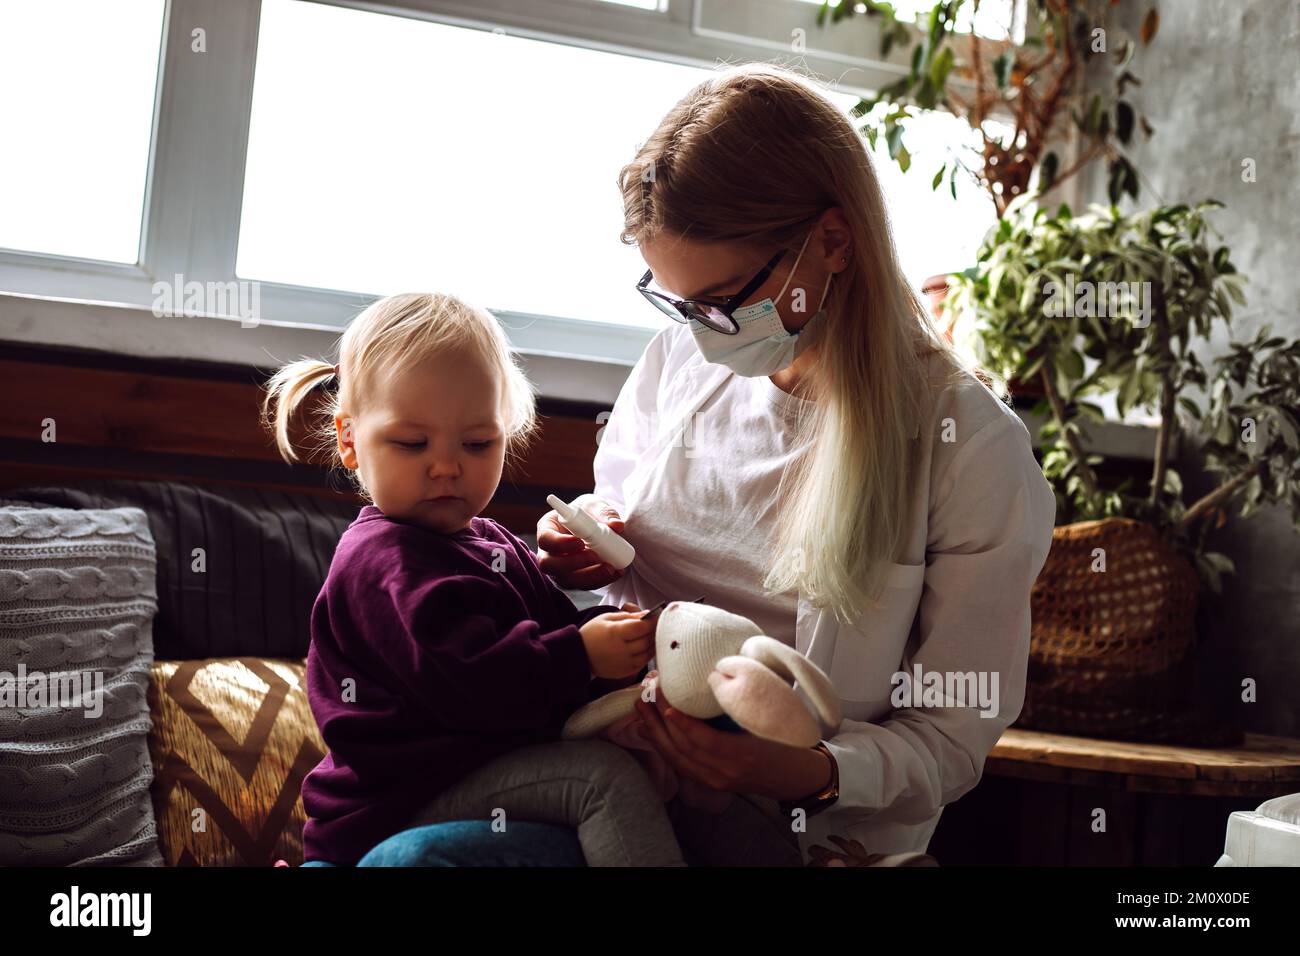 Portrait des kleinen Mädchens Kleinkind, das auf Kindern sitzt Arzt trägt medizinische Maske, die sich weigert, Nasenmedizin zu Hause zu bekommen. Stockfoto